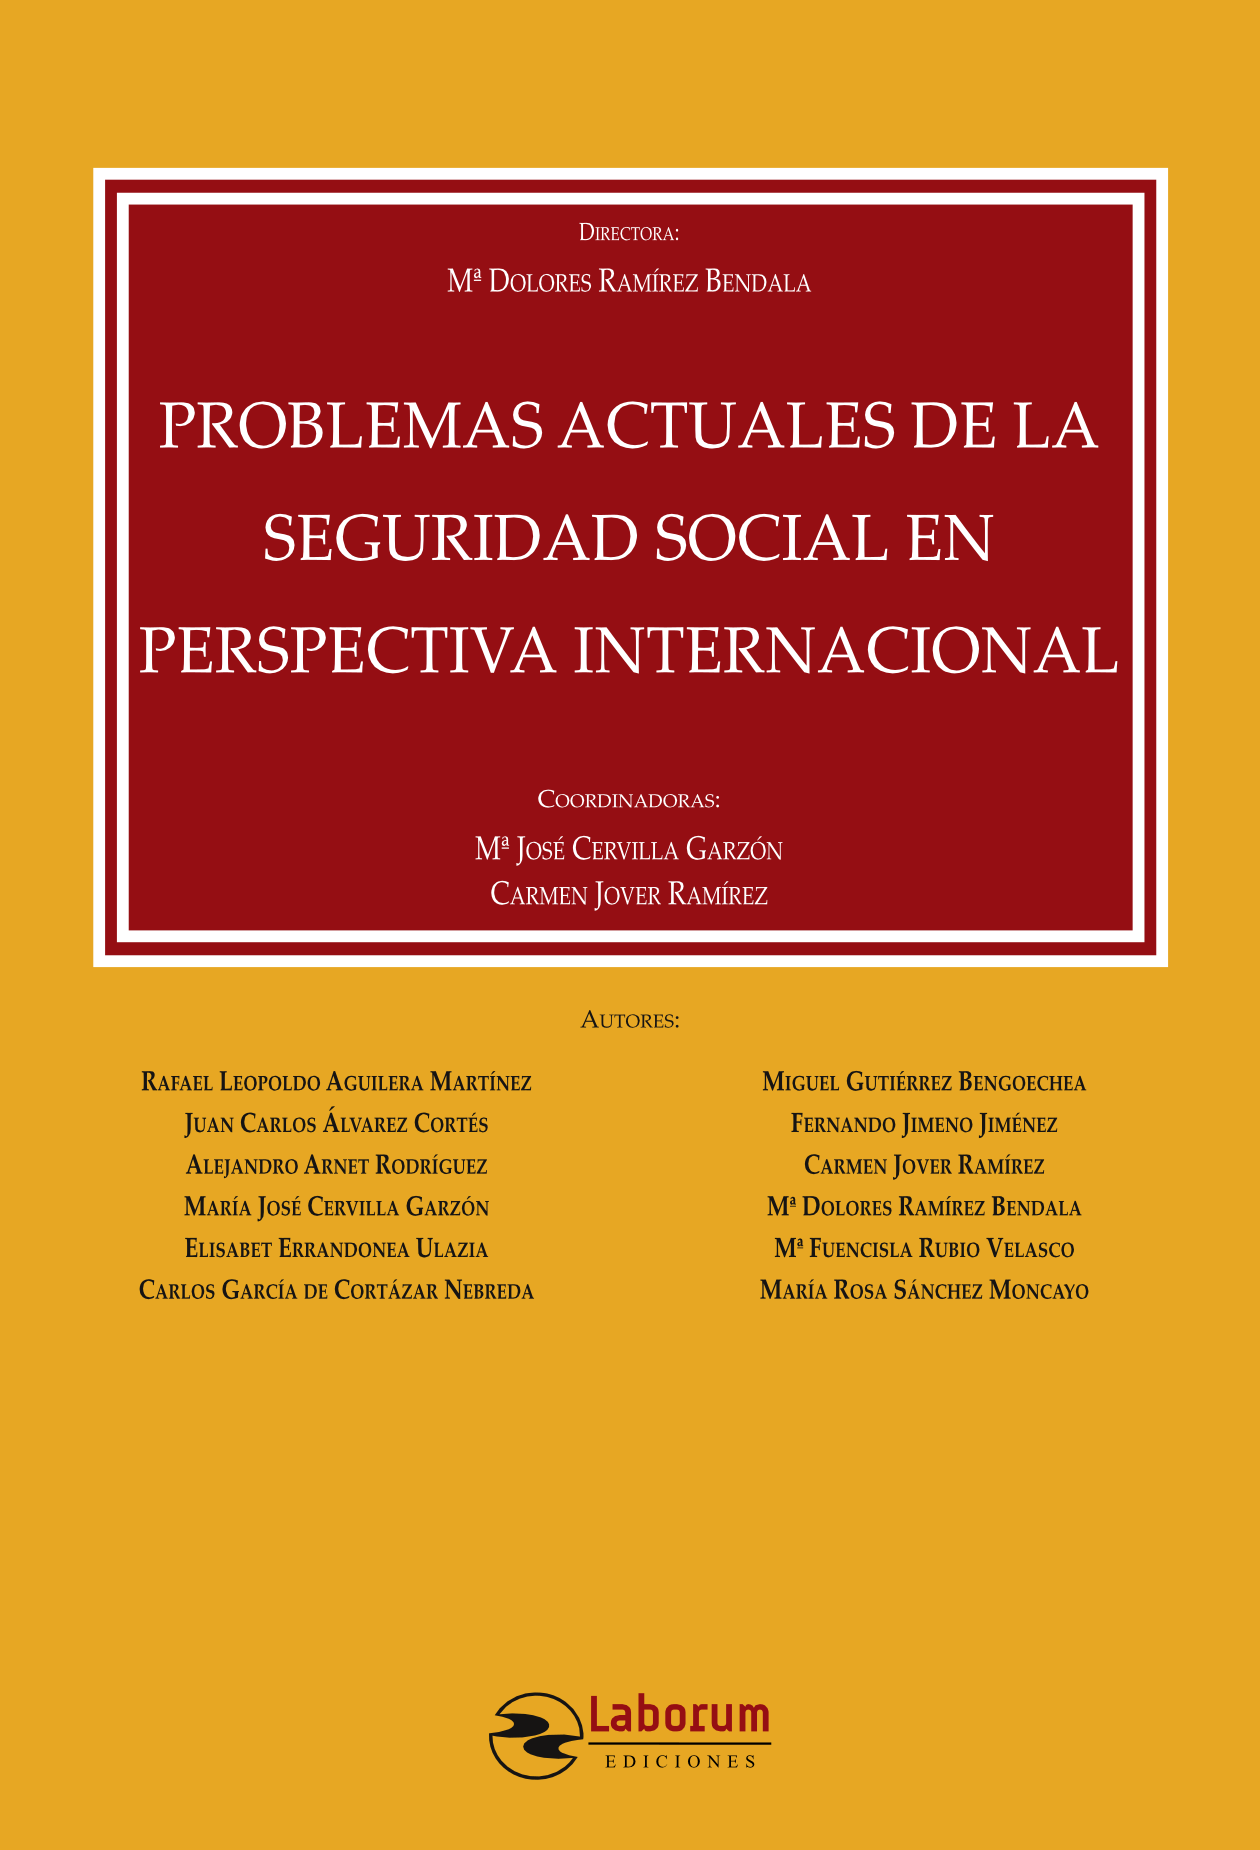 Seguridad Social perspectiva internacional